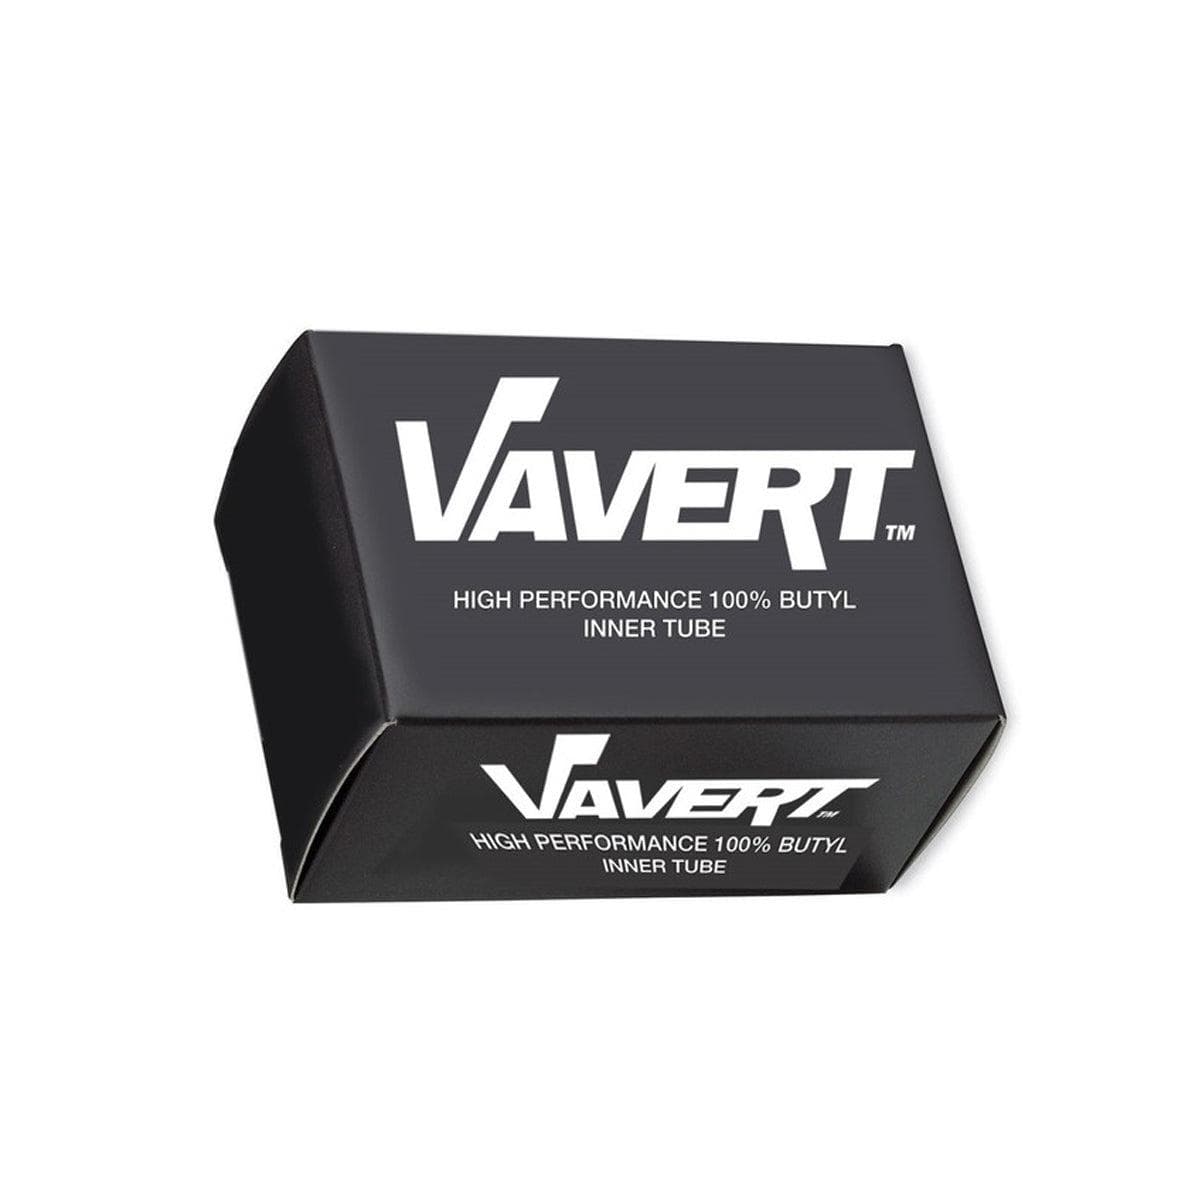 Vavert Inner Tube 12 1/2X1.75/2.125 Schrader Angled Valve:  12 1/2X1.75/2.125"